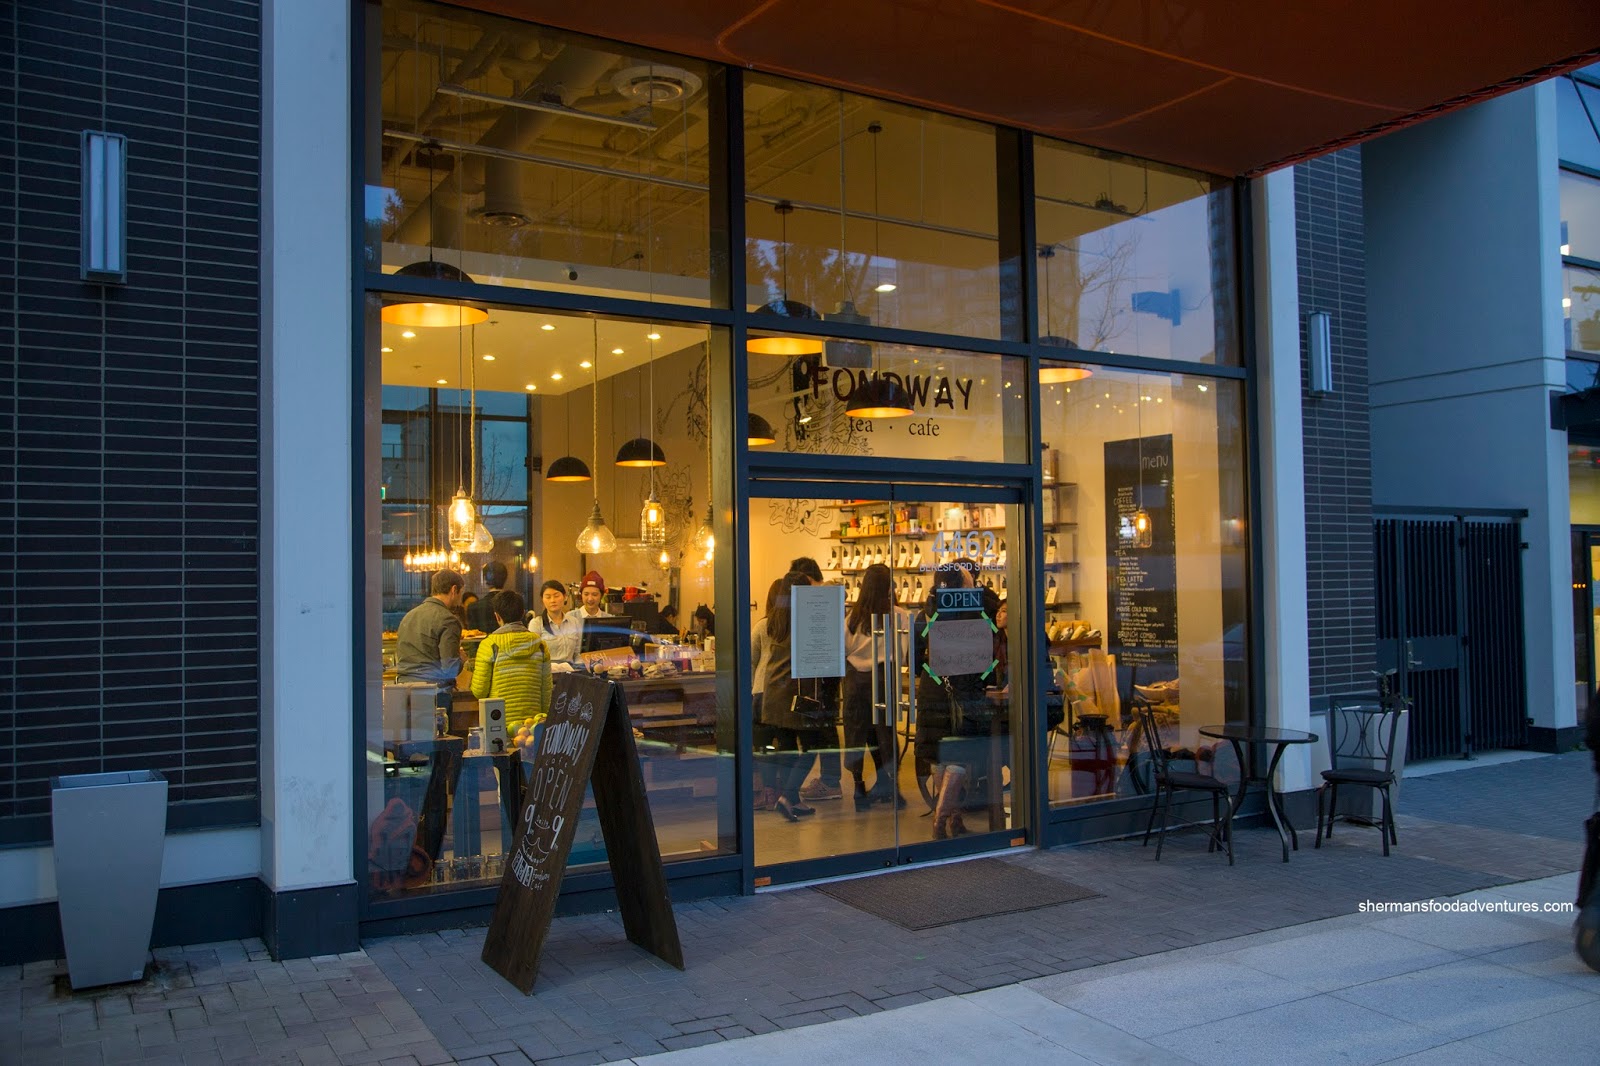 Fondway Cafe